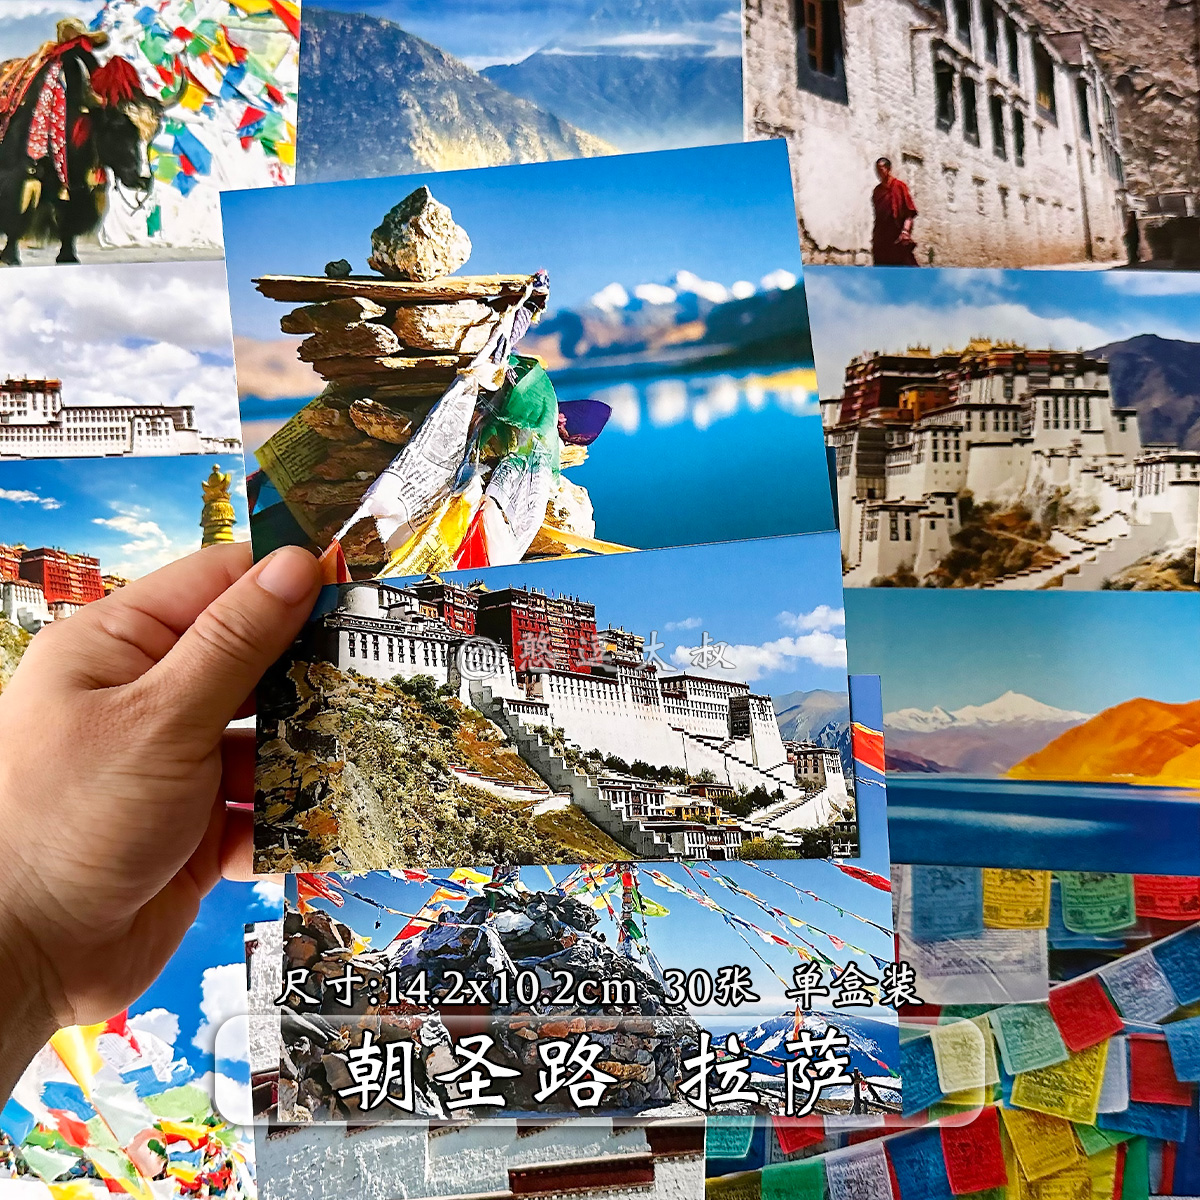 西藏风景明信片 美丽新疆中国北京 丽江杭州世界各地图重庆城市